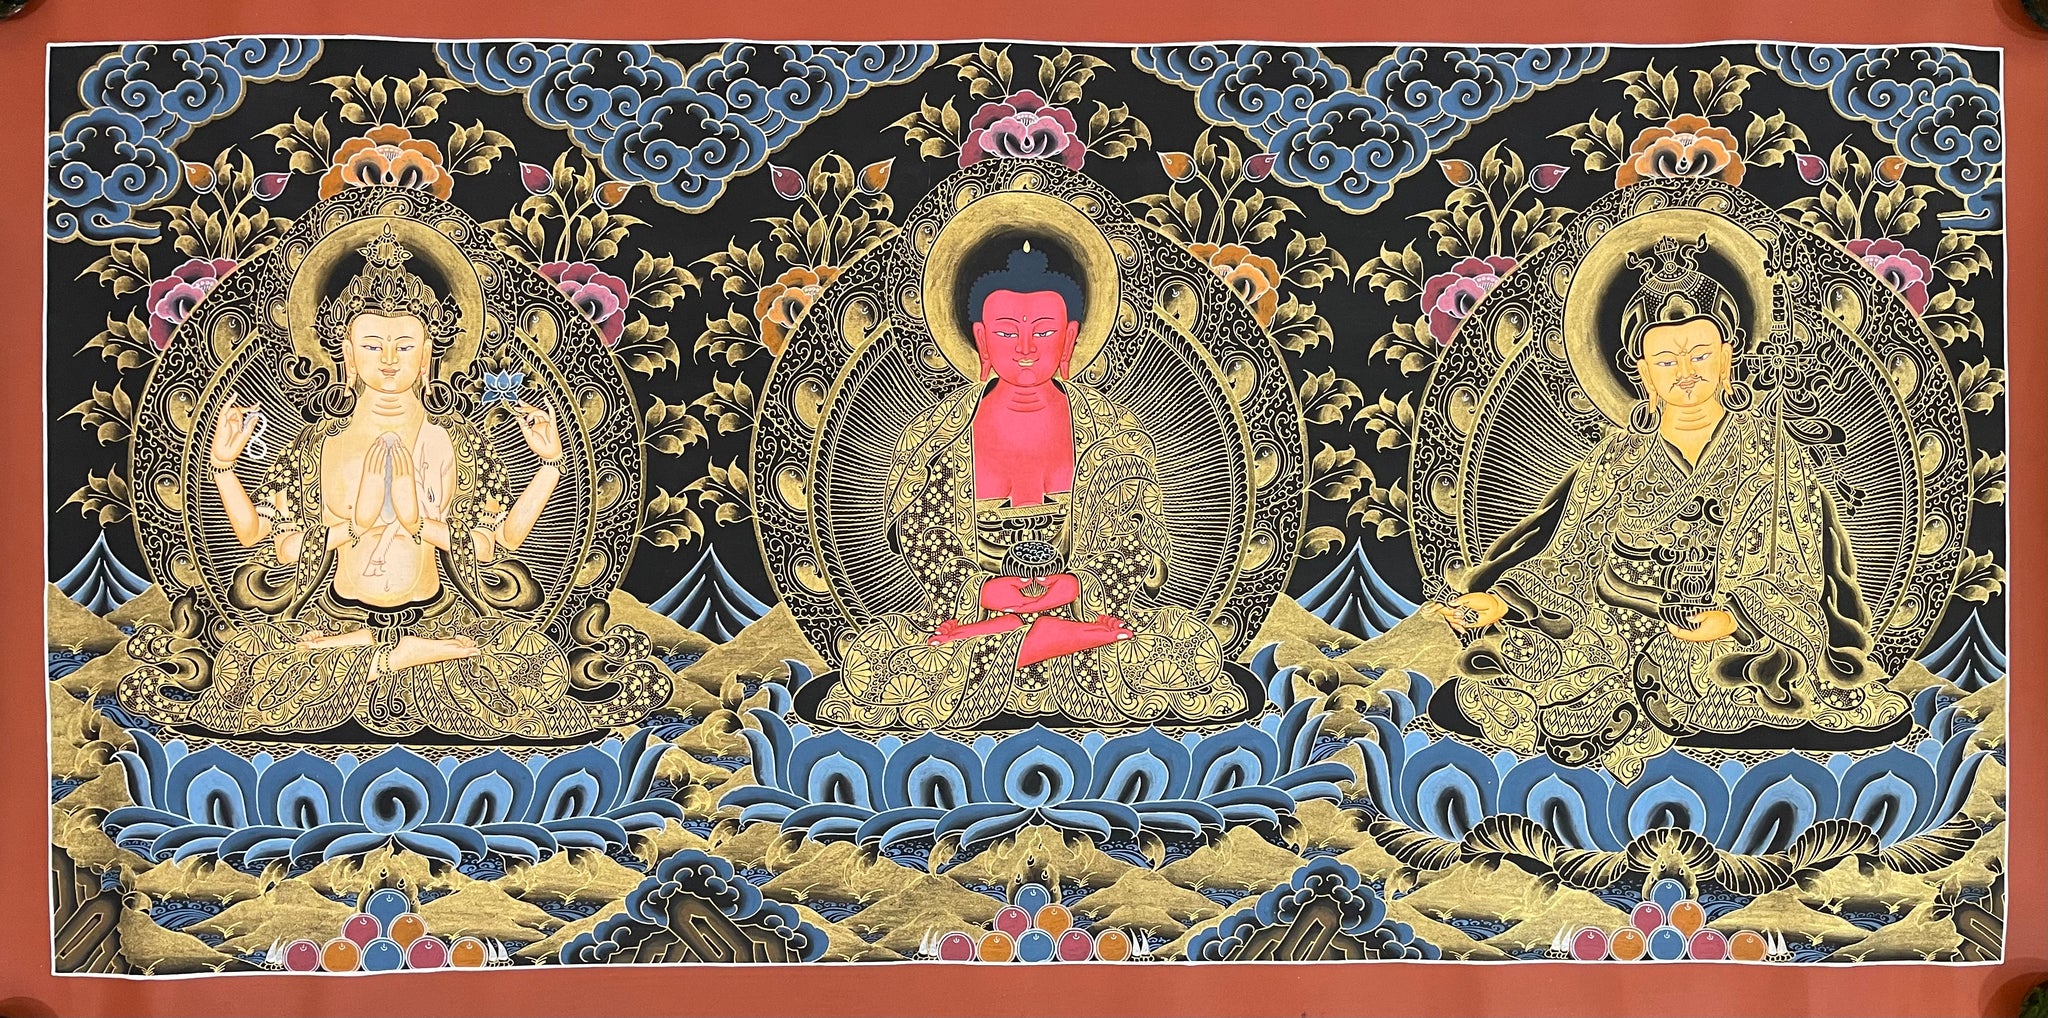 Amitabha Buddha, Chenrezig & Padmasambhava